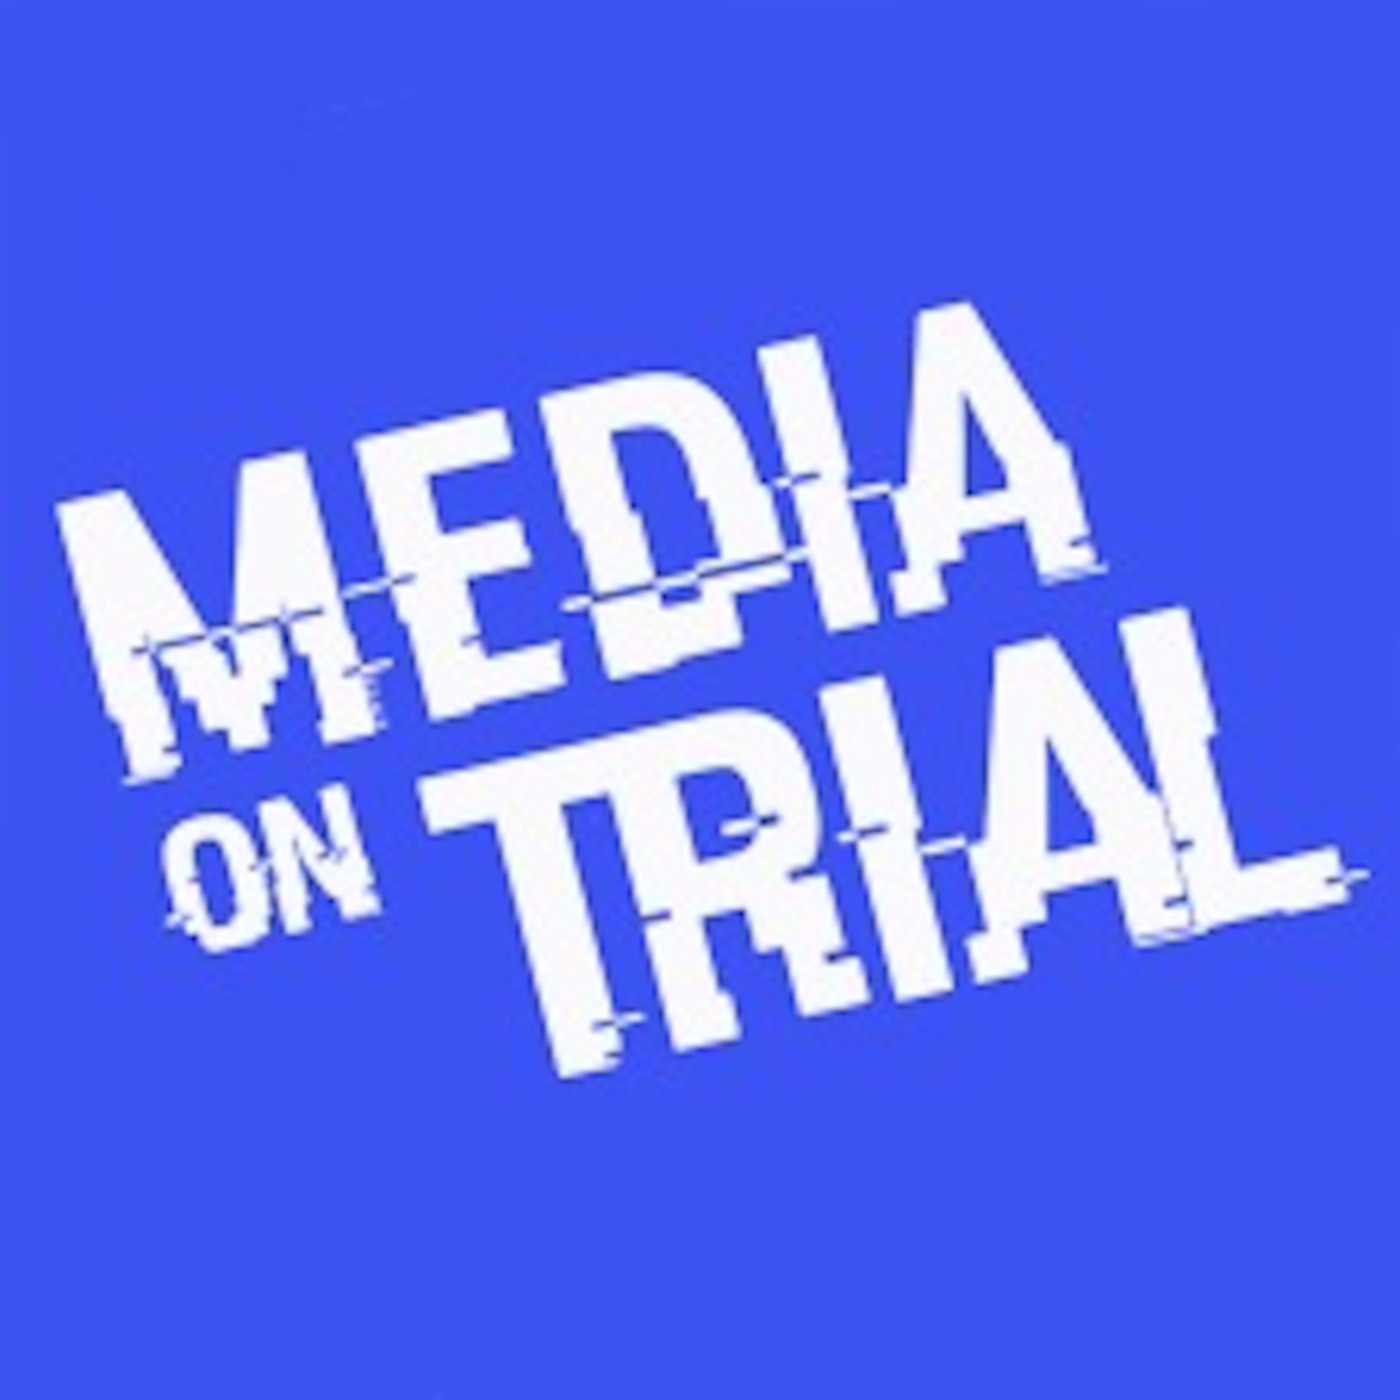 Patrick Henningsen on Media's 'Addiction' to War (Media On Trial - Leeds, 2018)